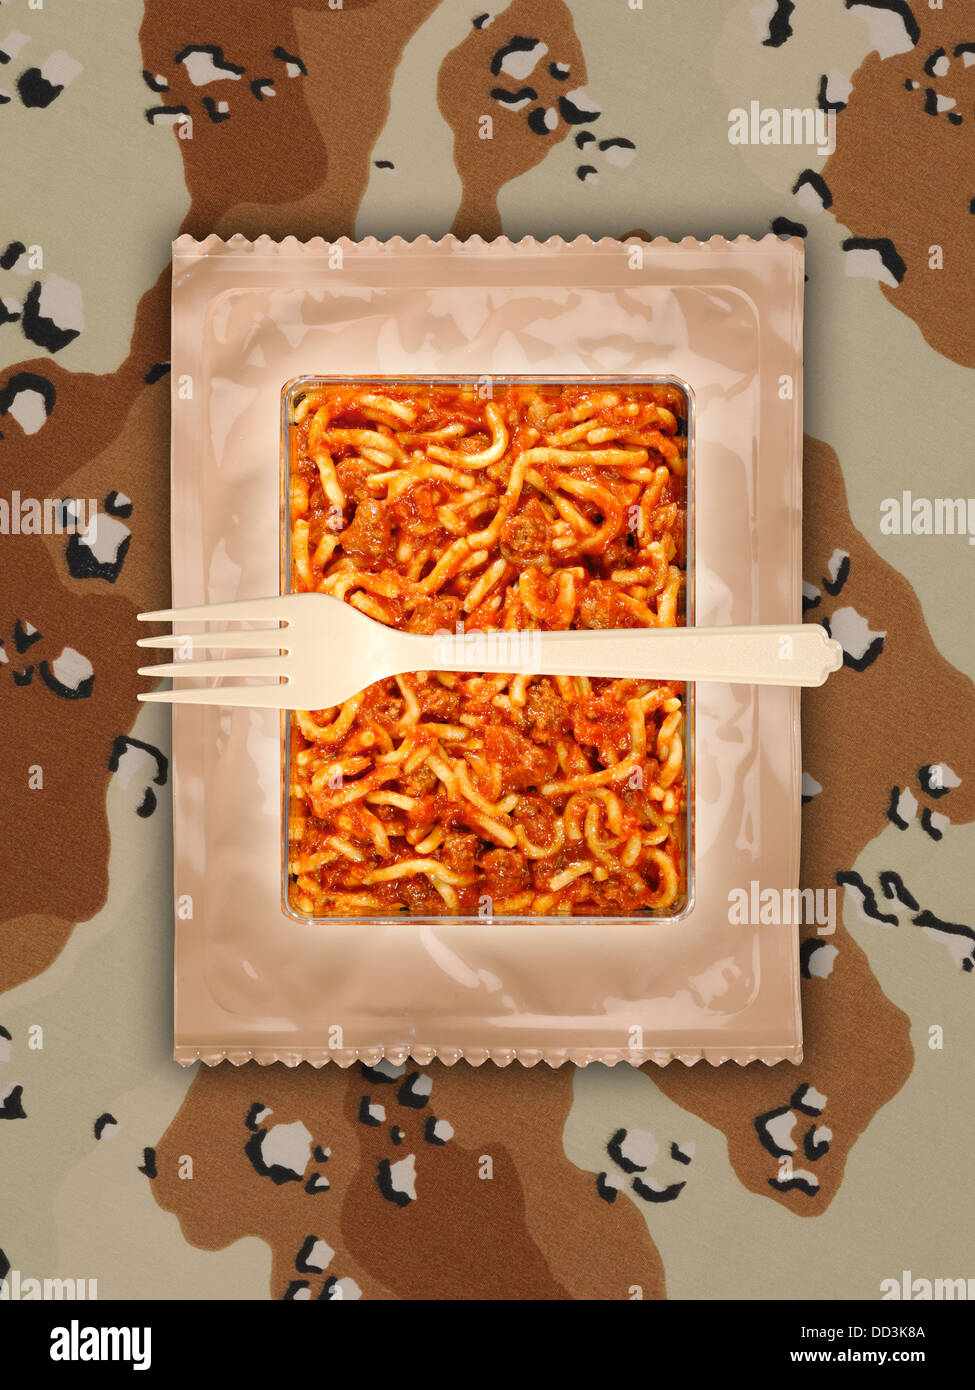 Militari razioni alimentari o pasti MRE pronto a mangiare su un sfondo camuffato. Confezioni aperte con utensili in plastica. Foto Stock